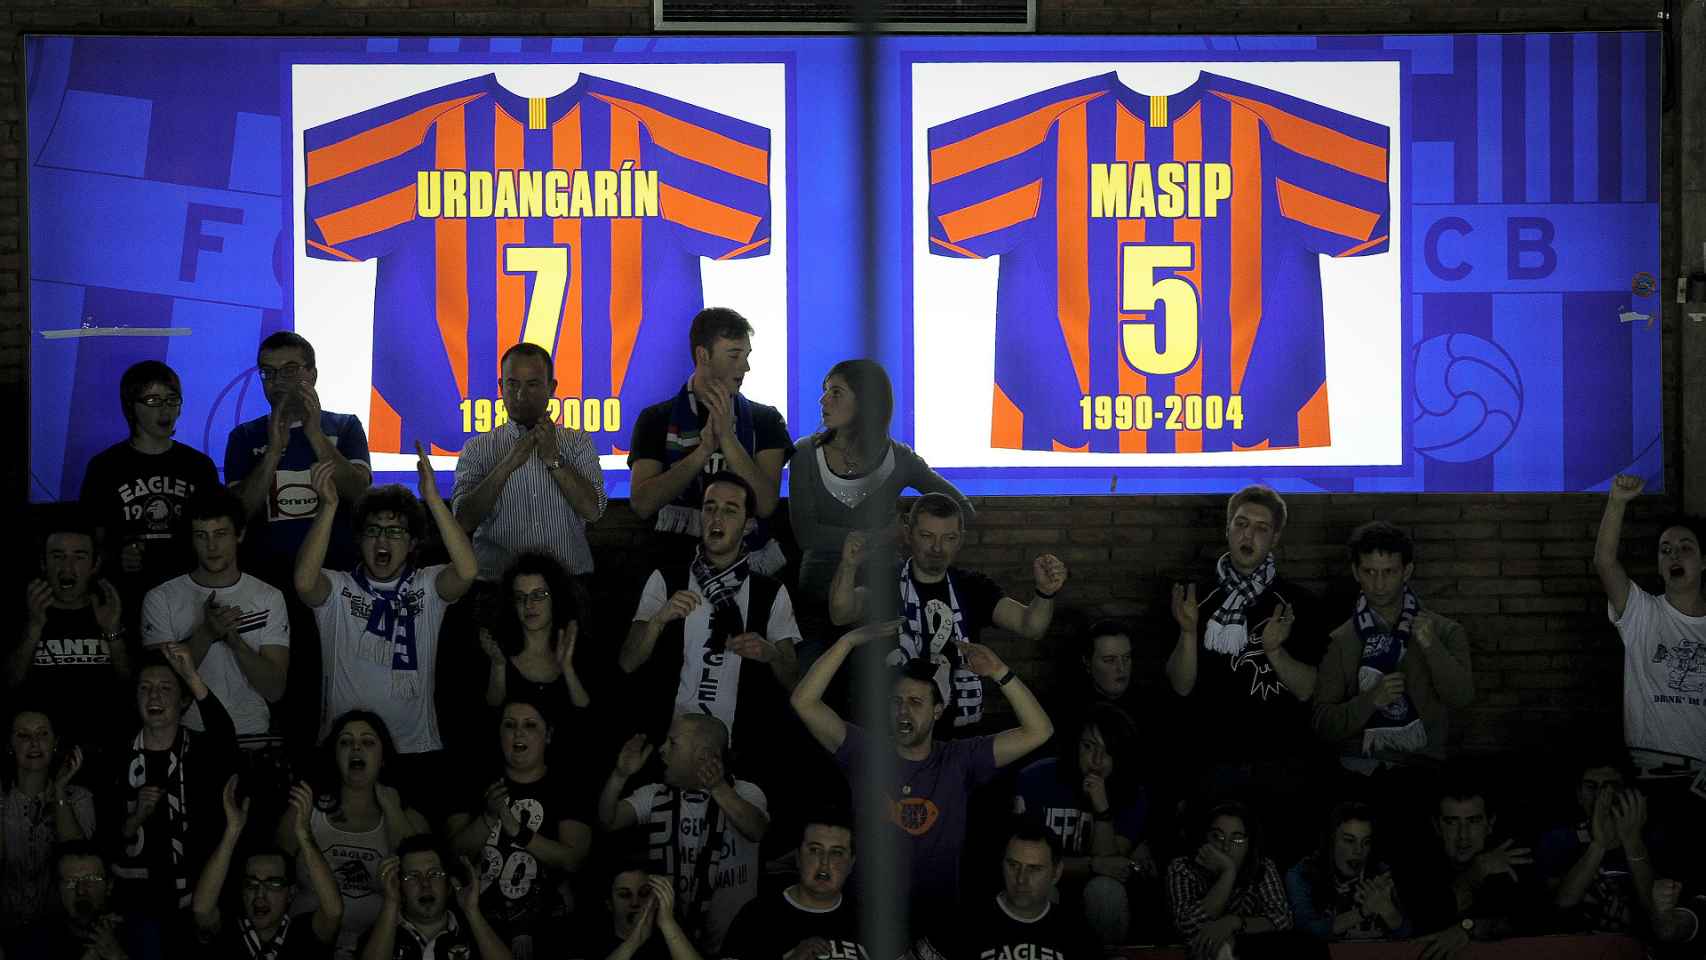 La camiseta de Urdangarin luce junto a la de Masip en el Palau Blaugrana.